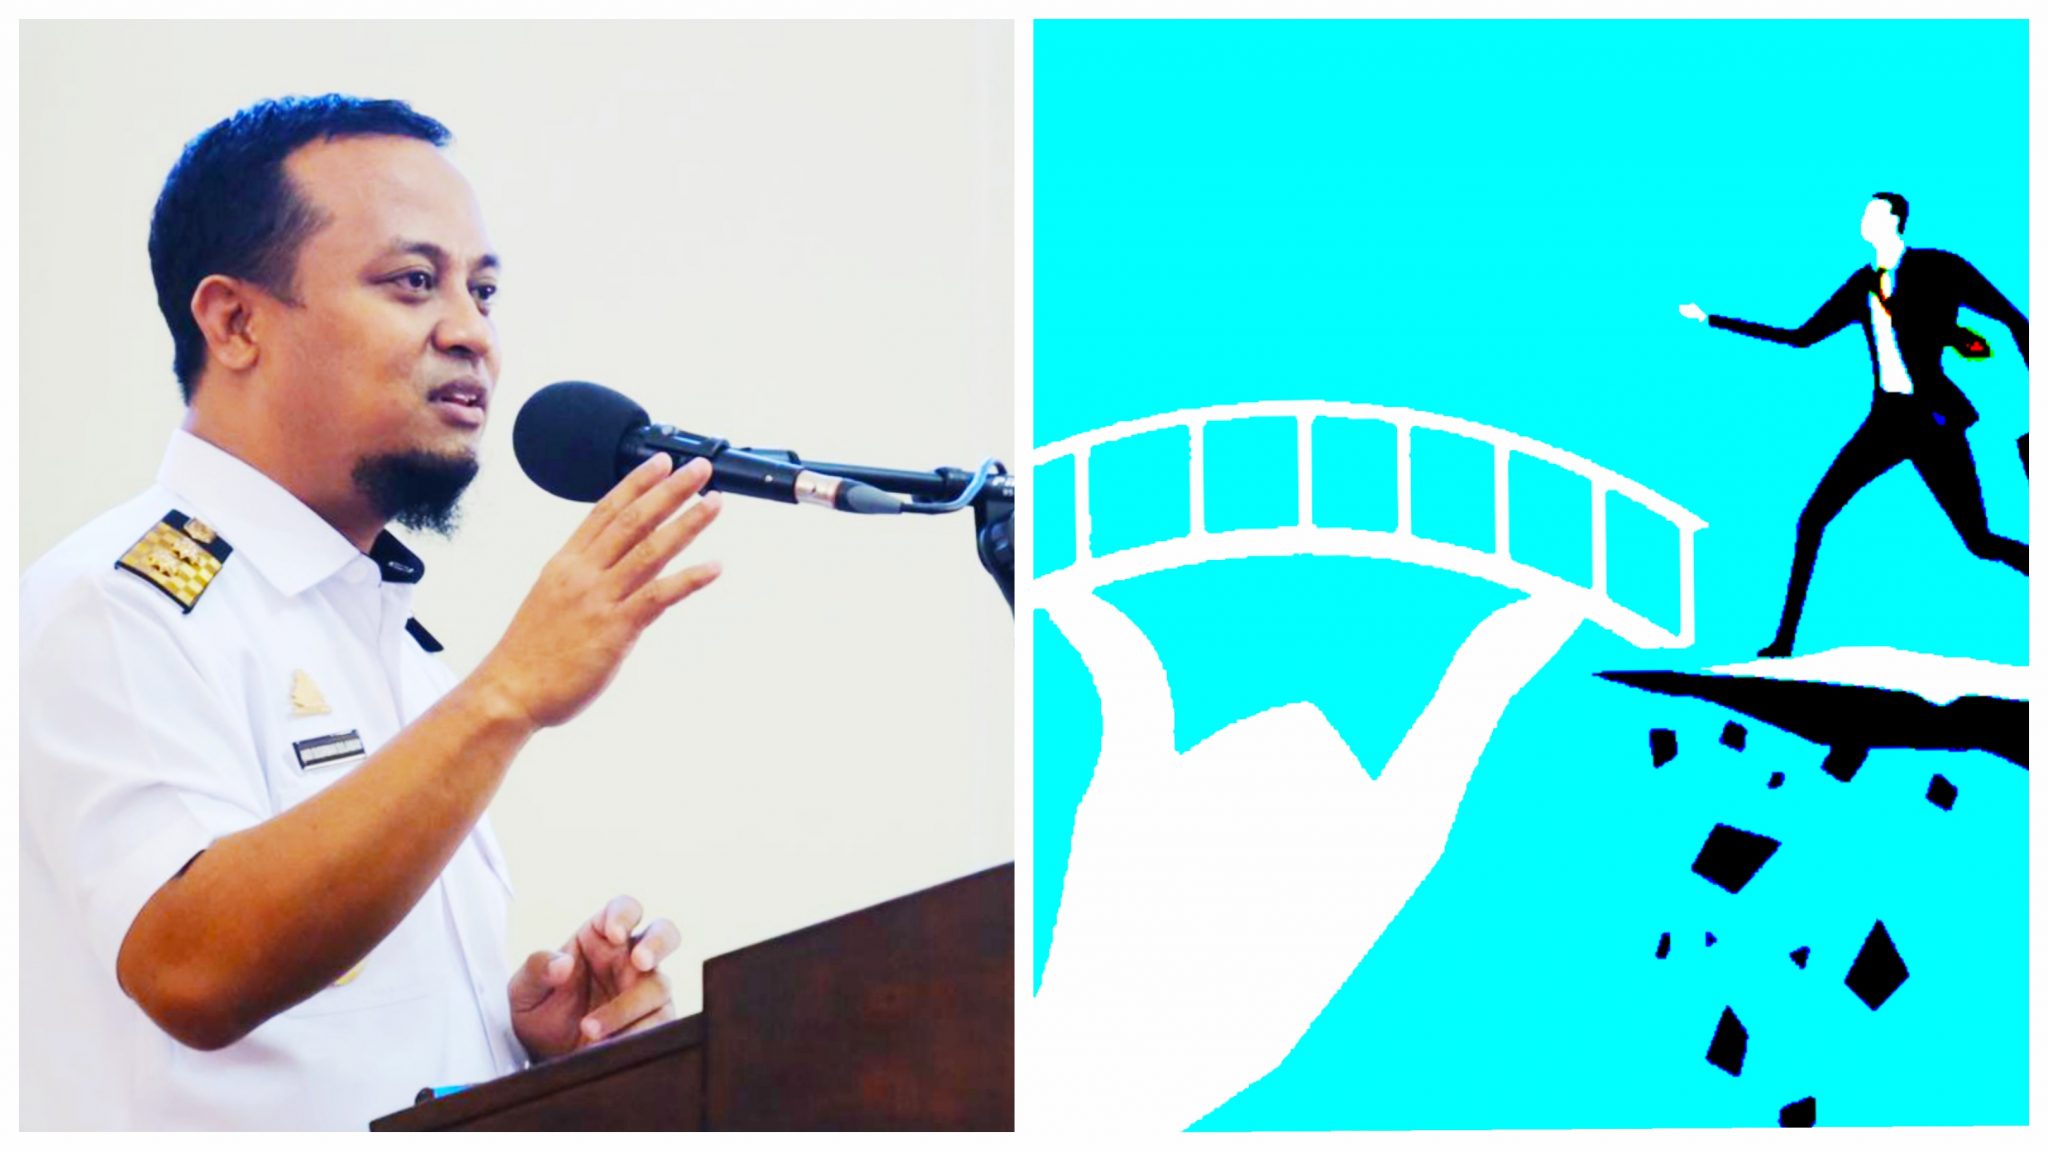 Jembatan Rusak di Kahu Bone, Plt Gubernur Sulsel Segera Bangun Jembatan Darurat